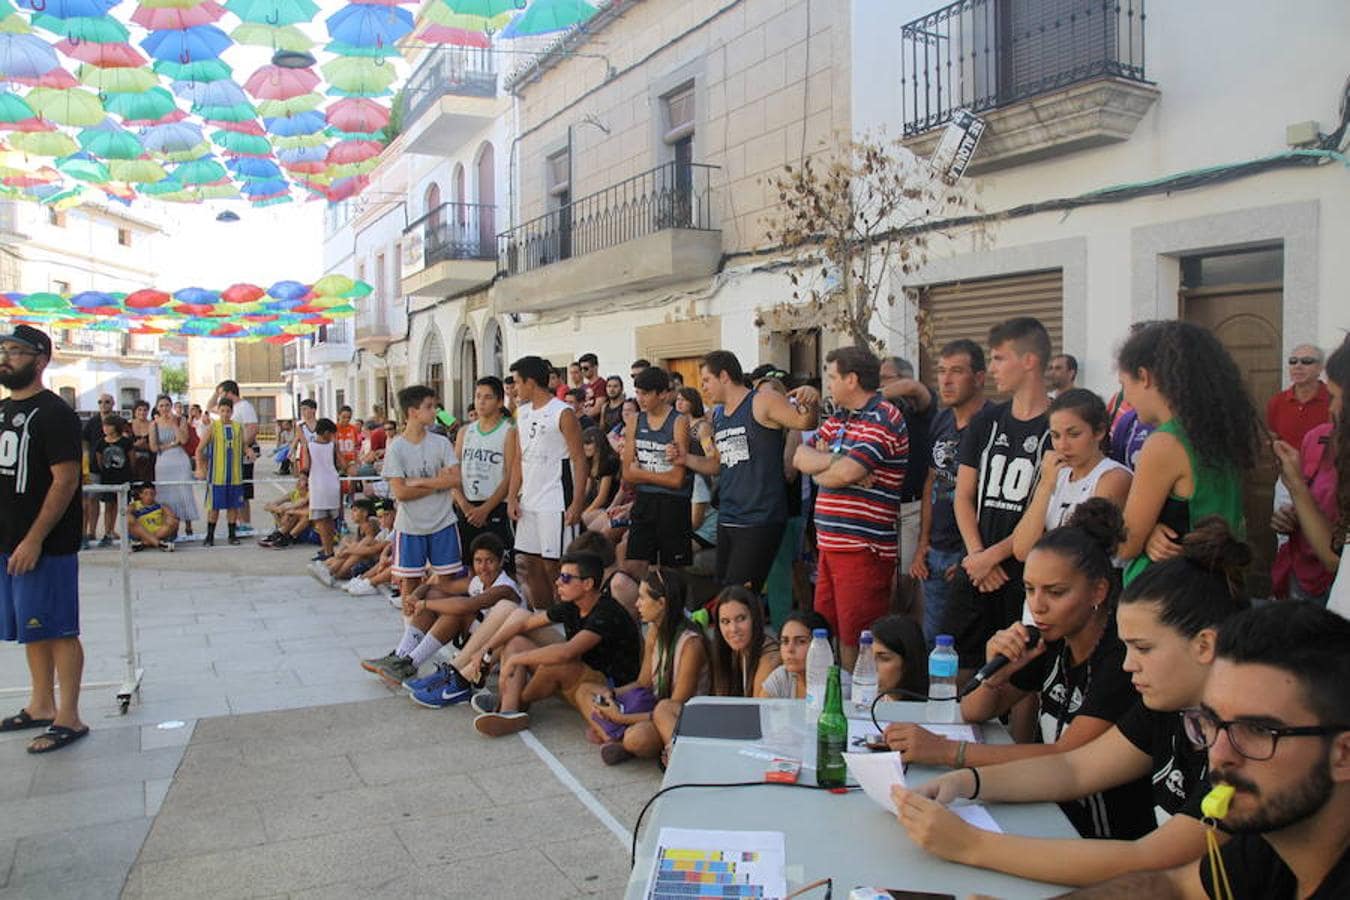 2000 personas visitaron el 3x3 de Baloncesto en Malpartida de Cáceres